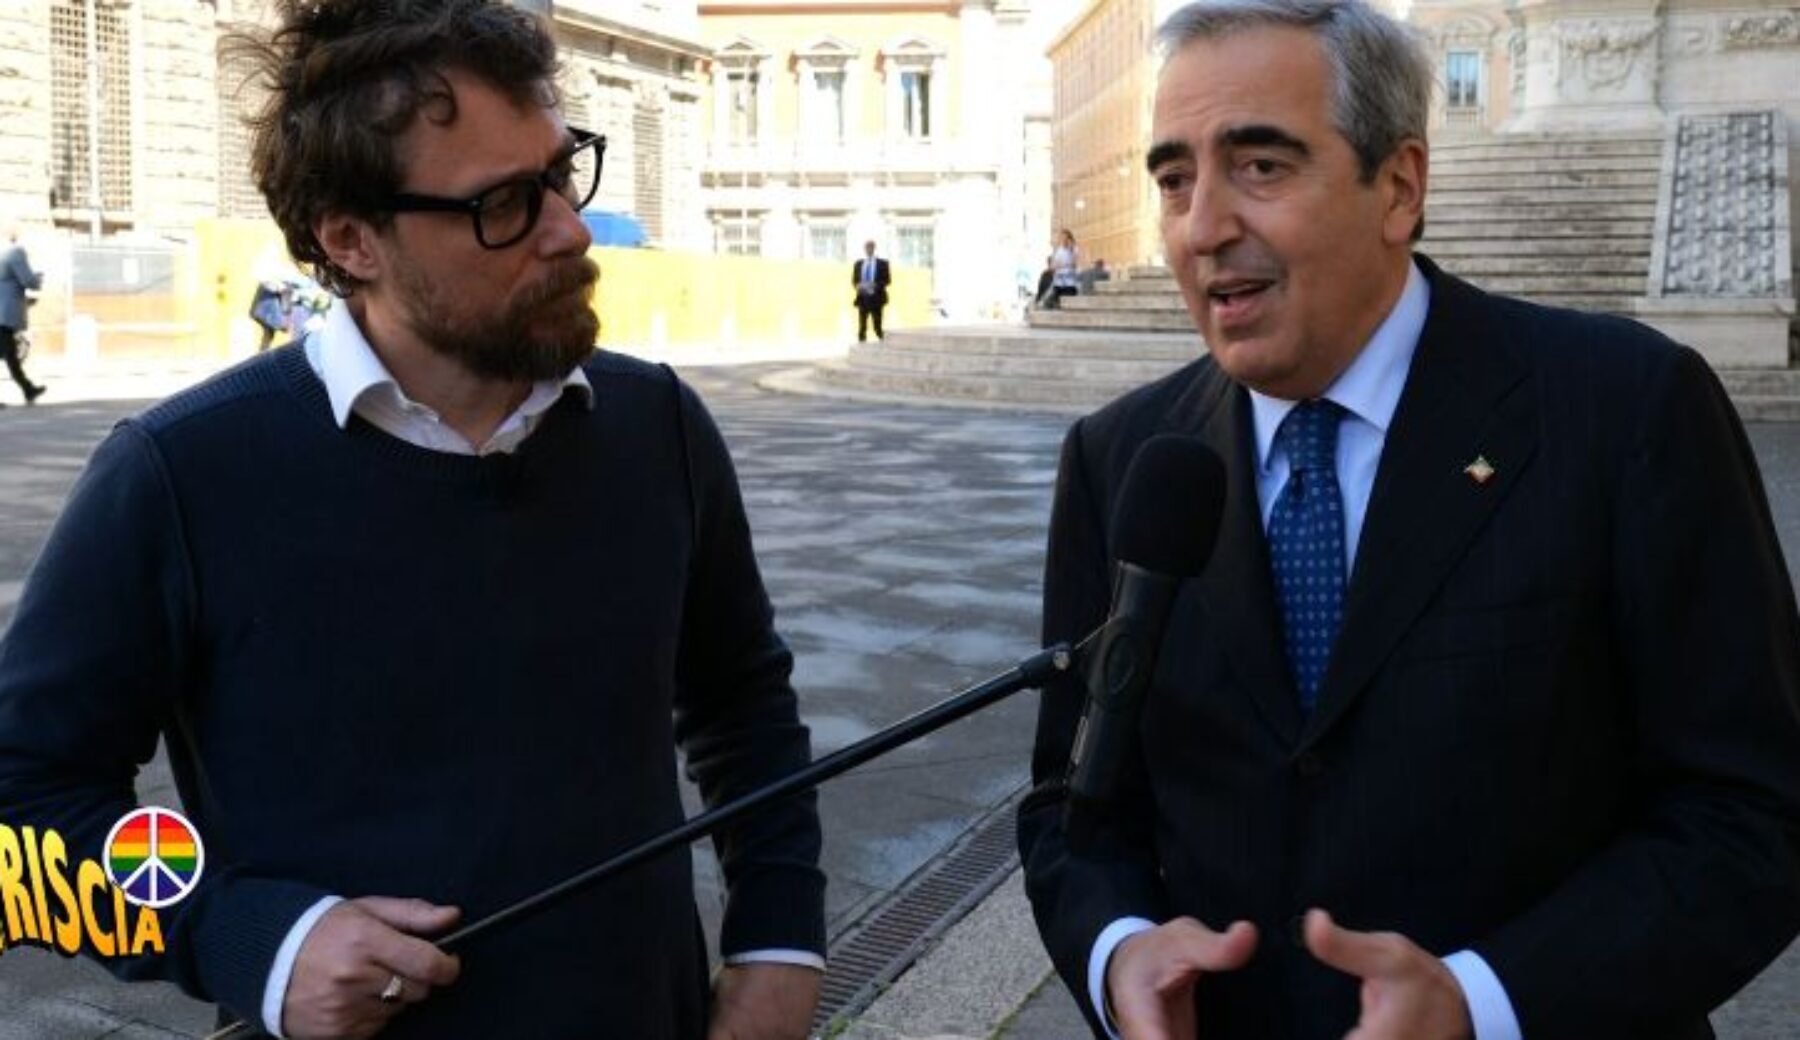 Questa sera a Striscia la notizia, Colombia-Gate: parla il senatore Maurizio Gasparri